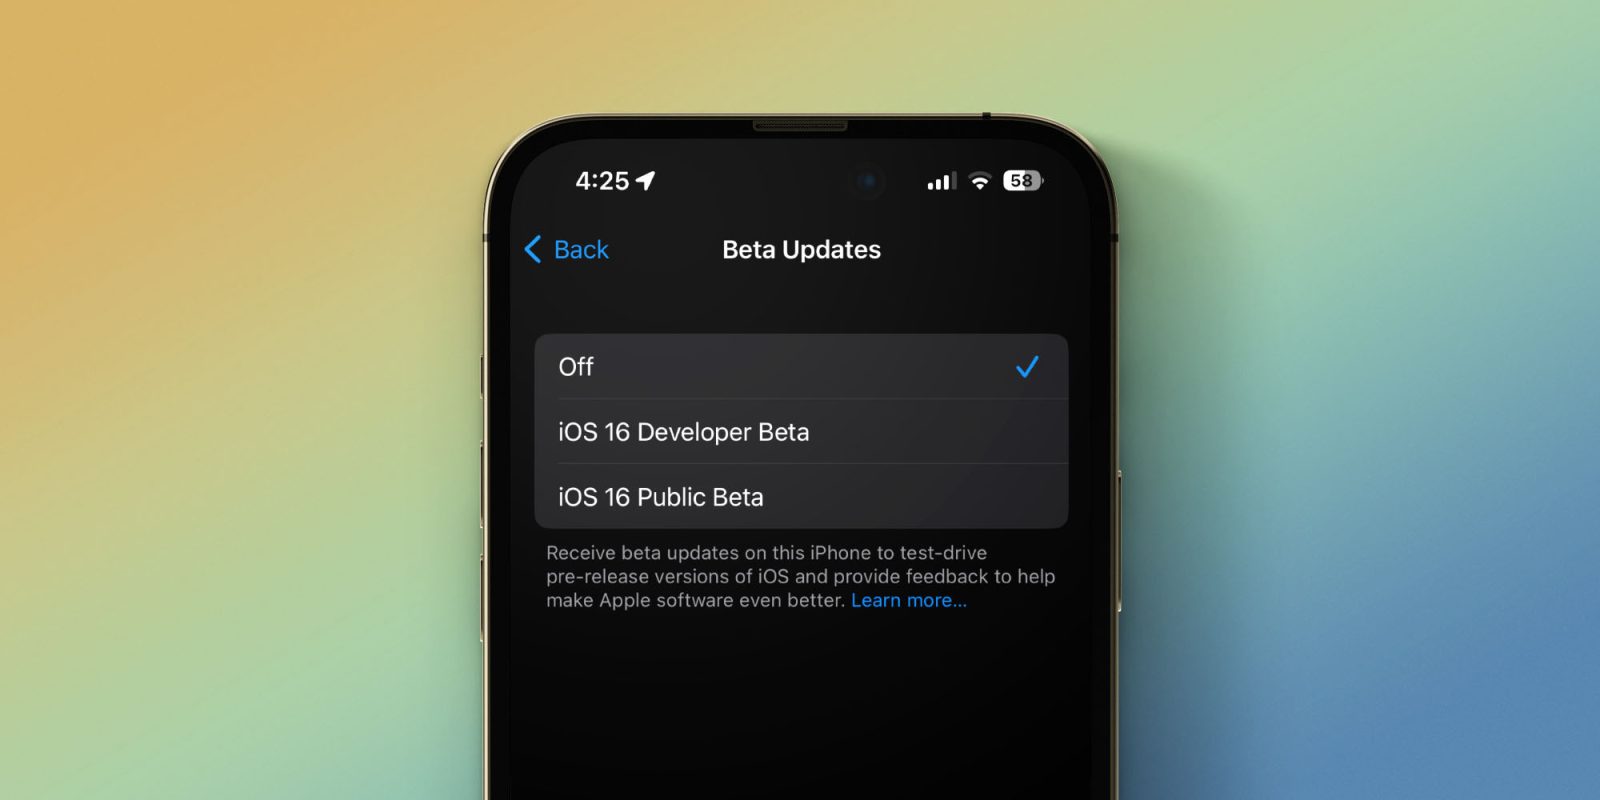 Active las actualizaciones beta de iOS en Configuración